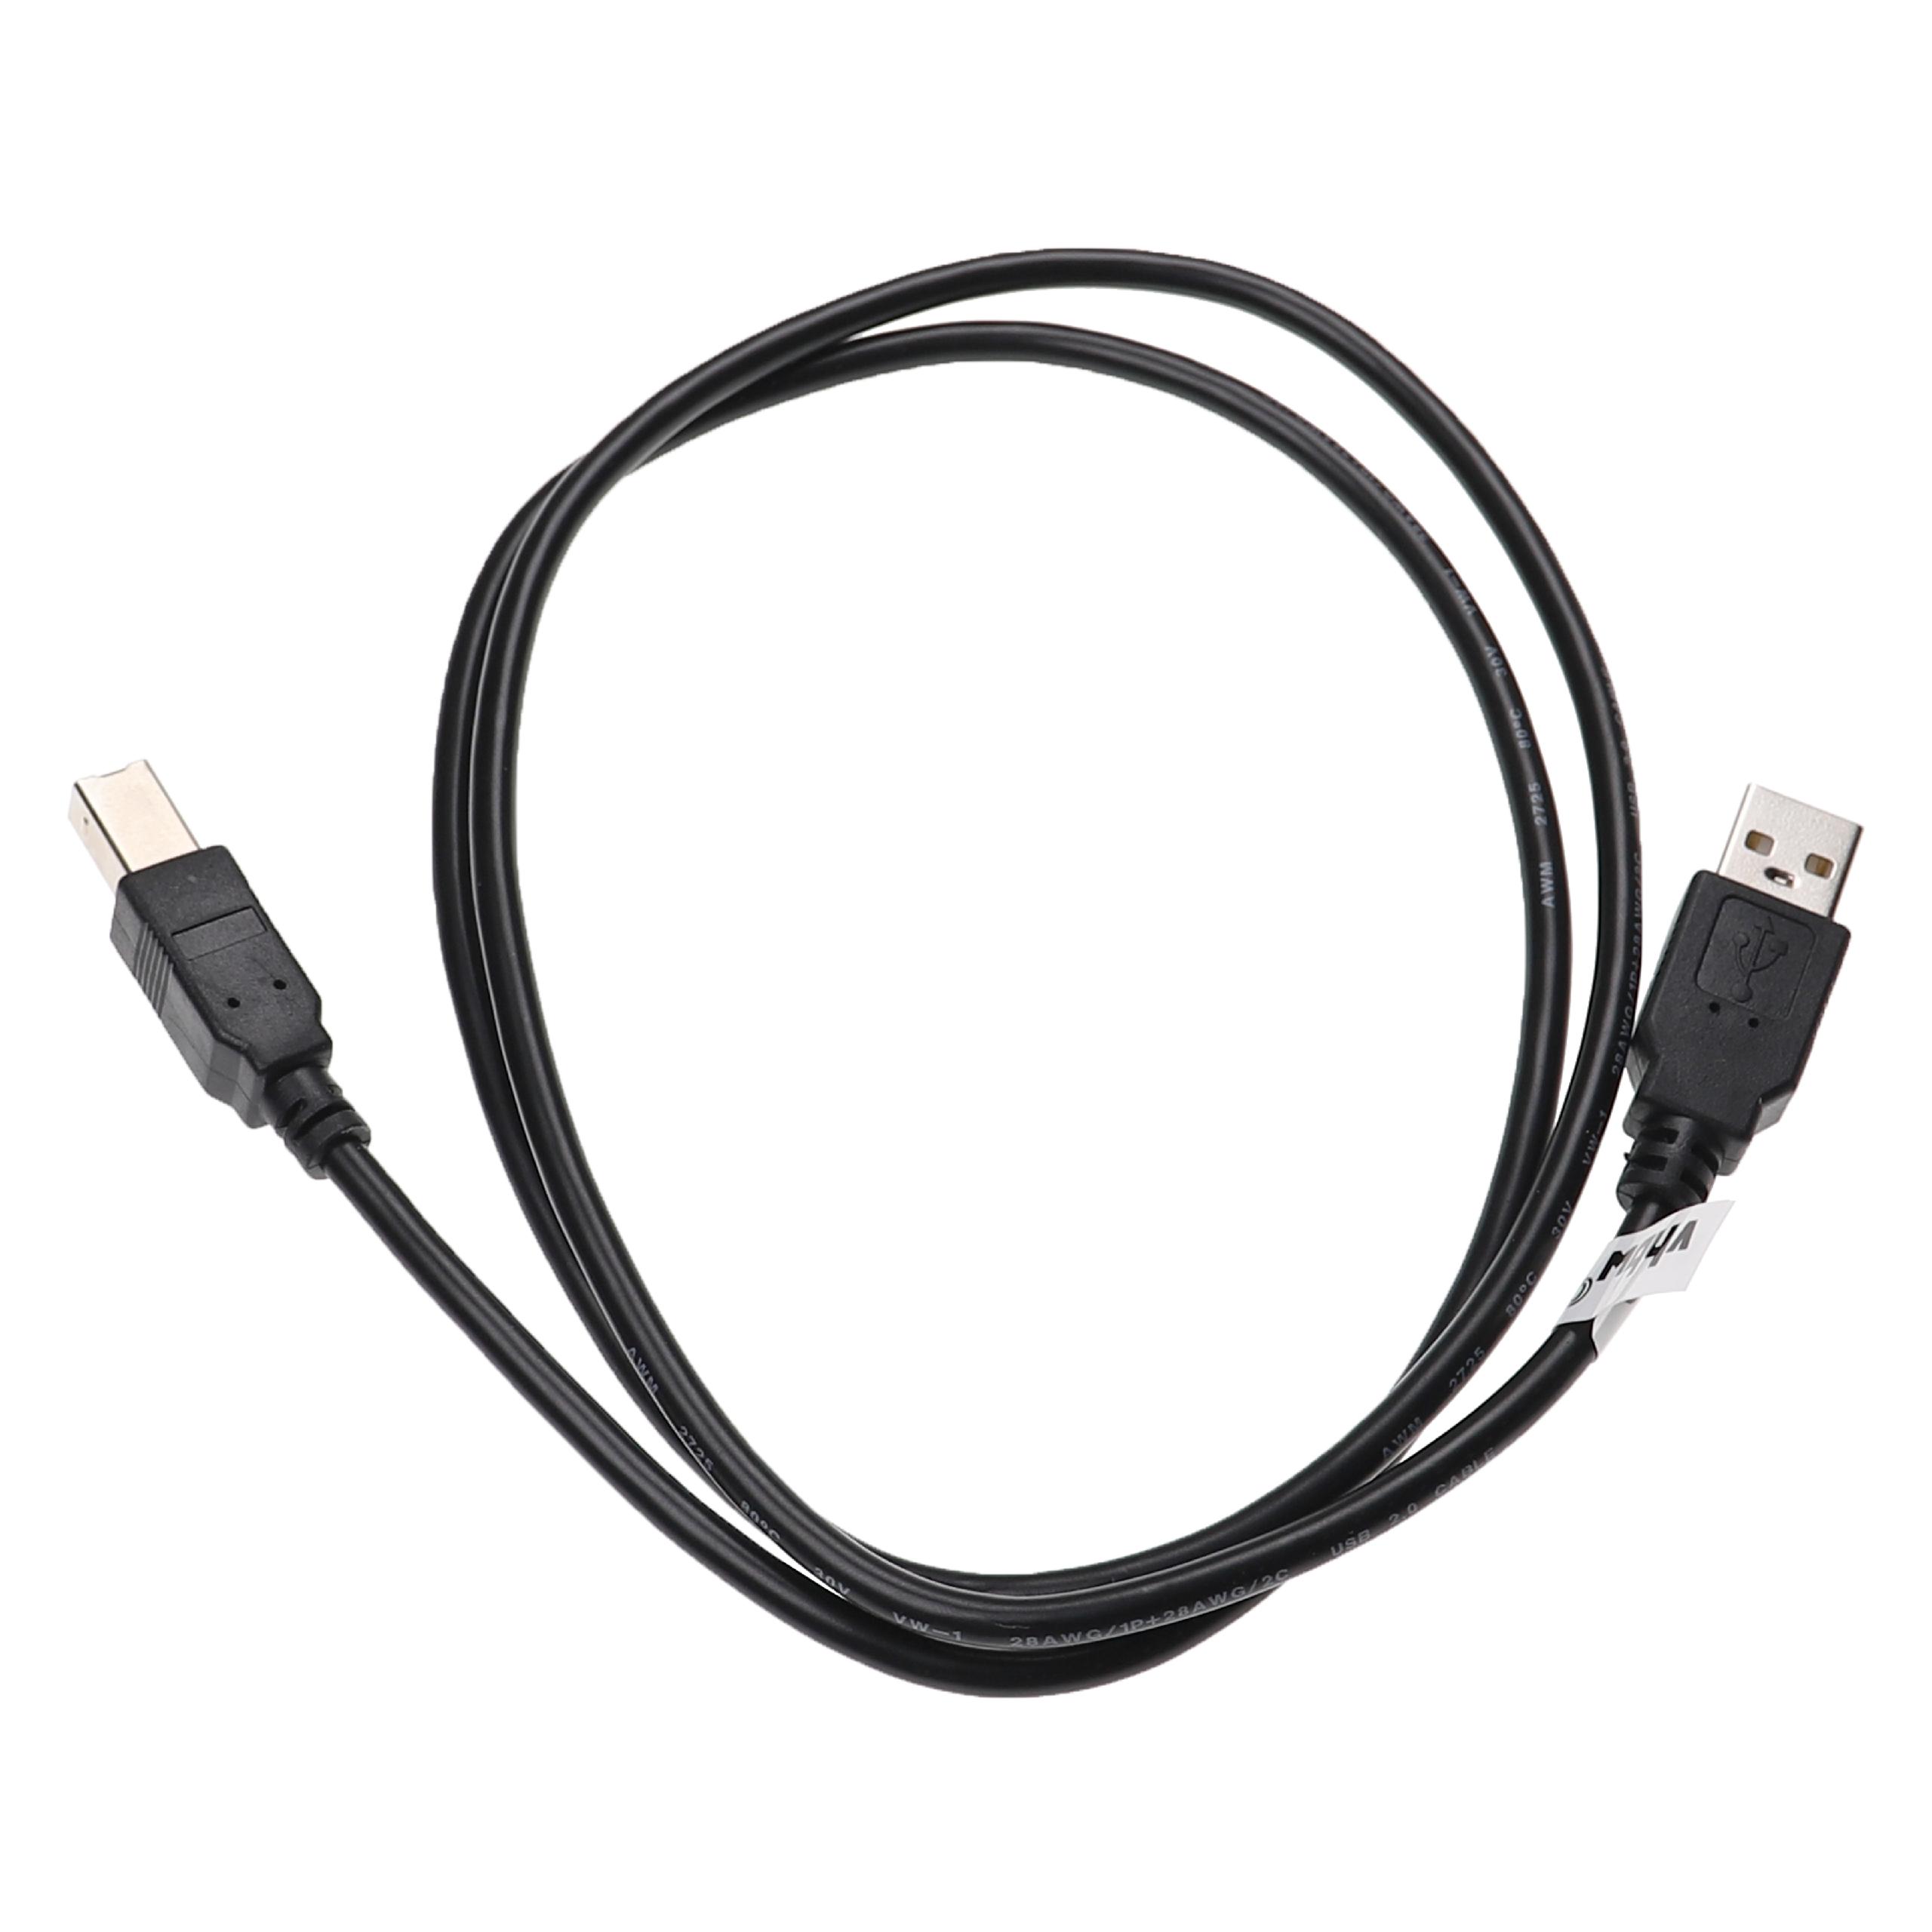 Vhbw Câble USB A vers USB B pour imprimante, scanner - Adaptateur